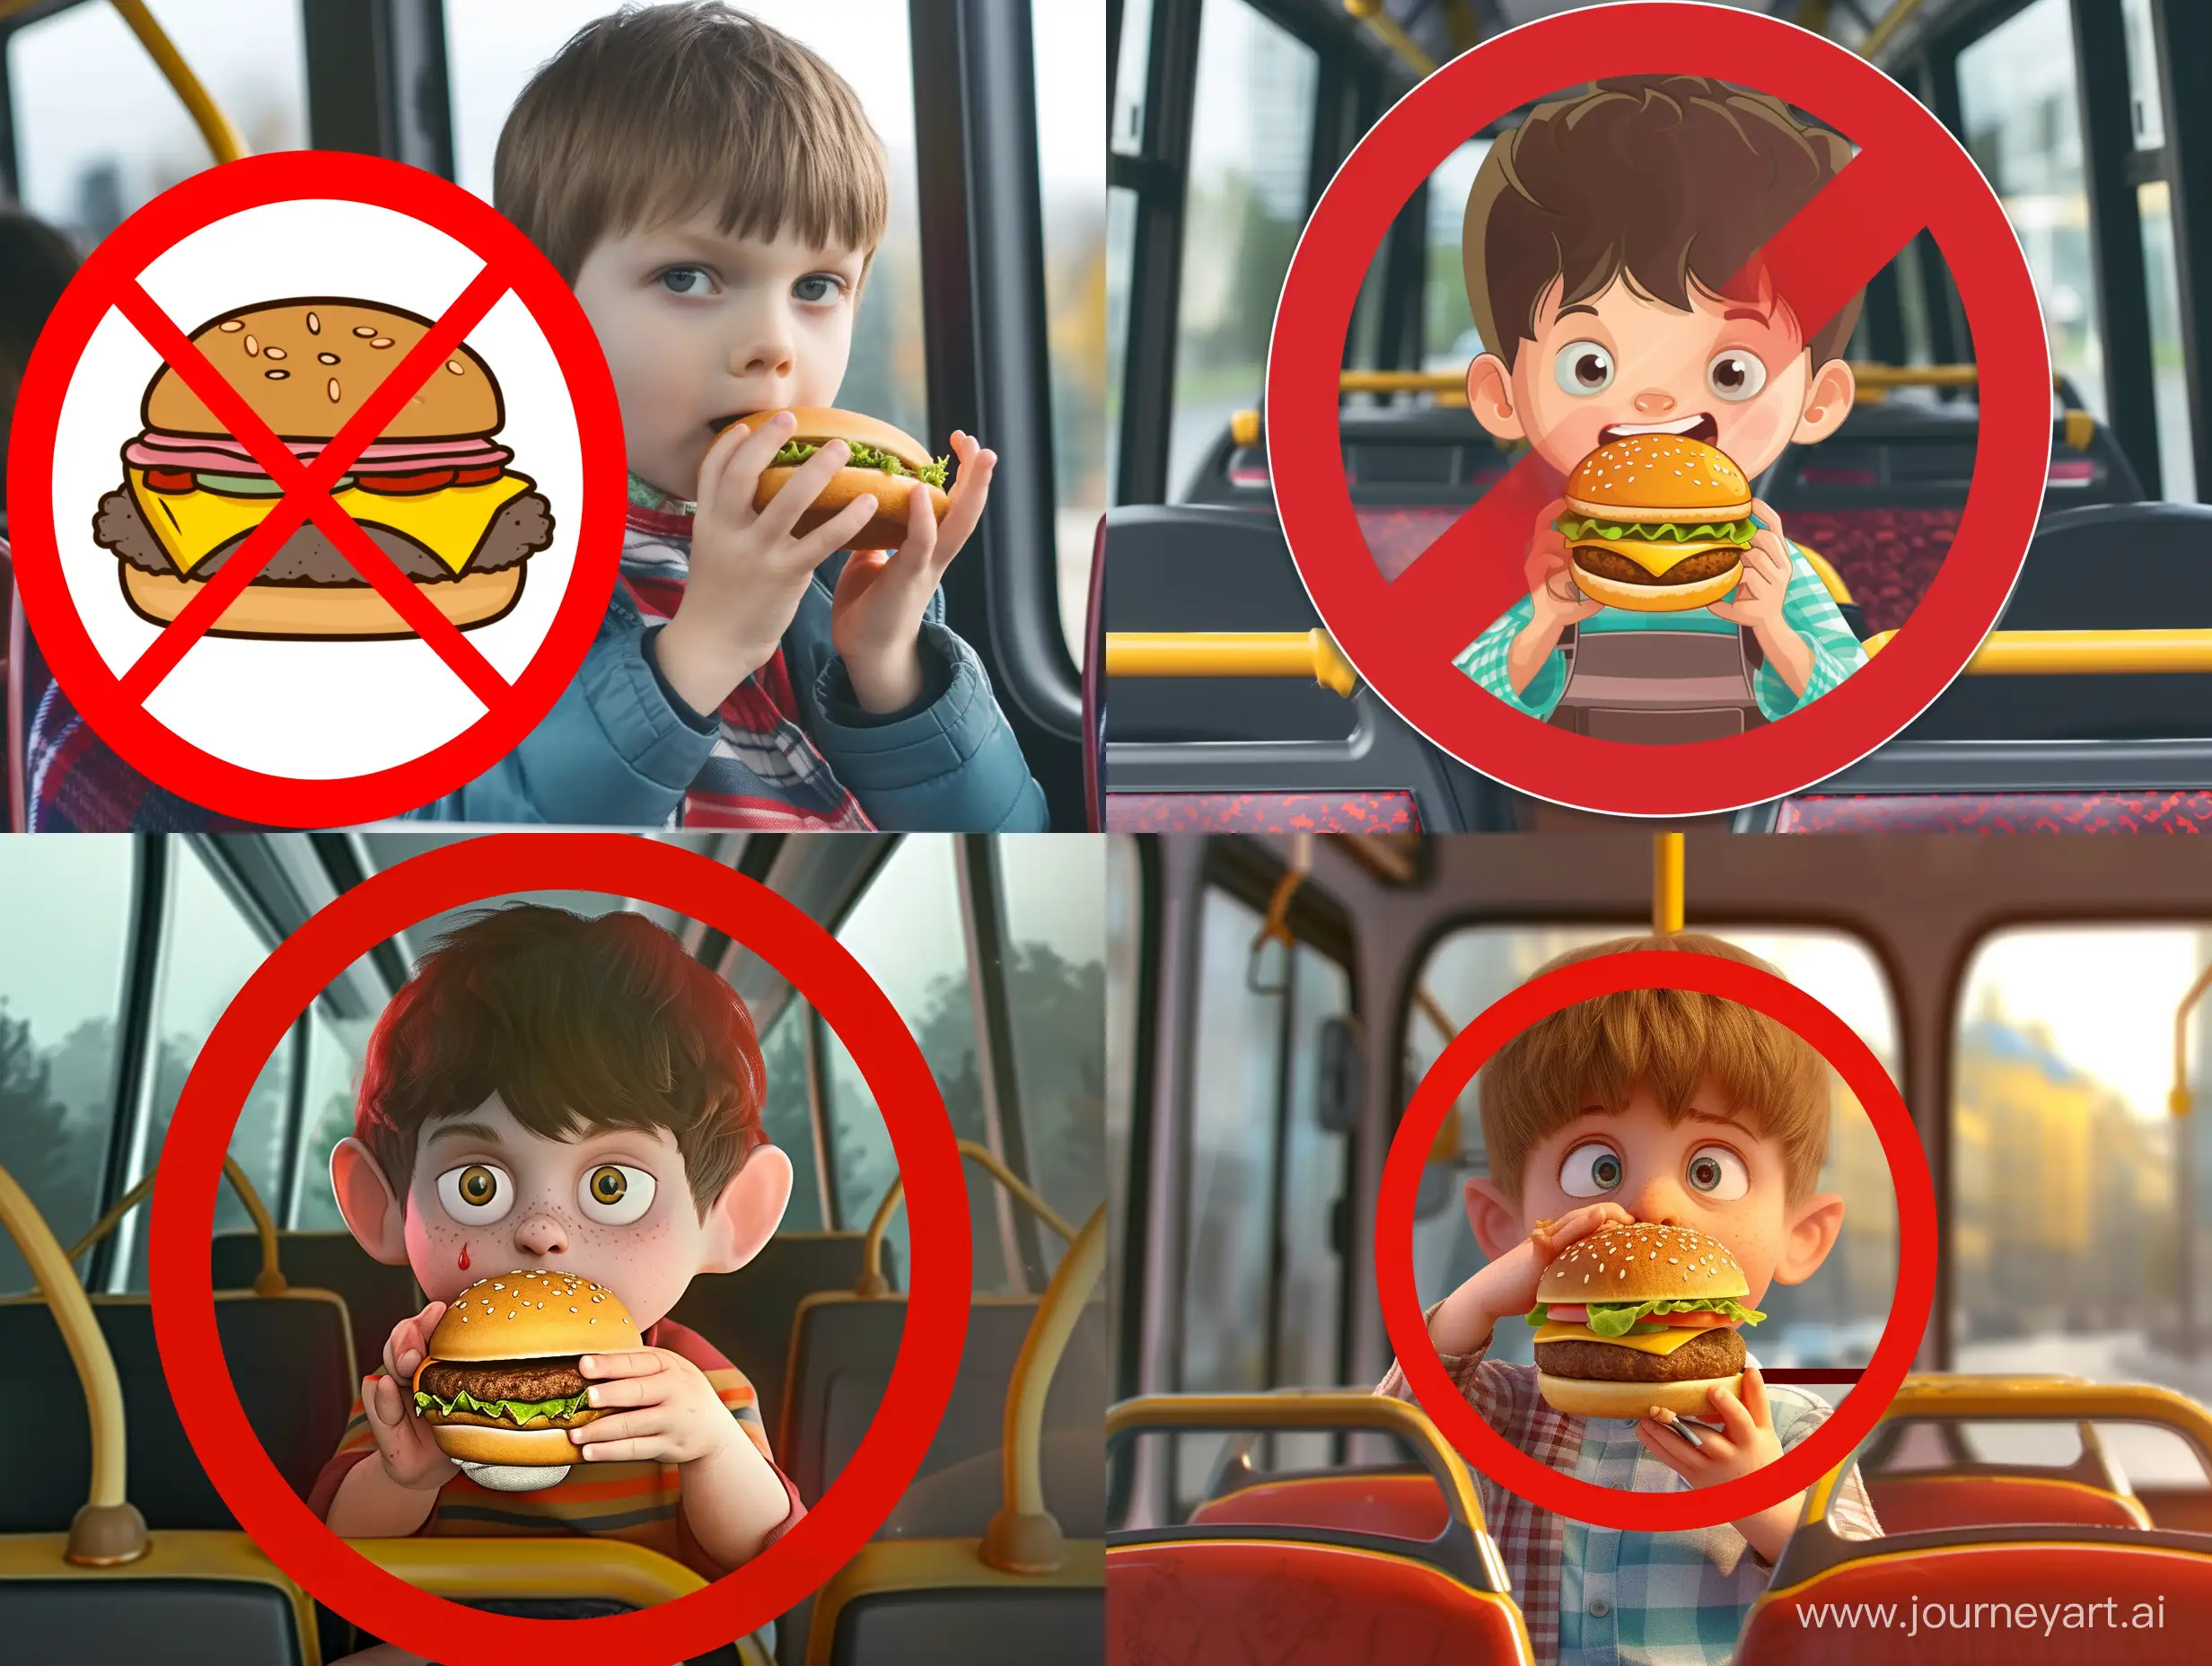 Картинка где мультяшный маленький мальчик ест гамбургер в автобусе и это все в красном кругу с чертой как в запрещающем знака